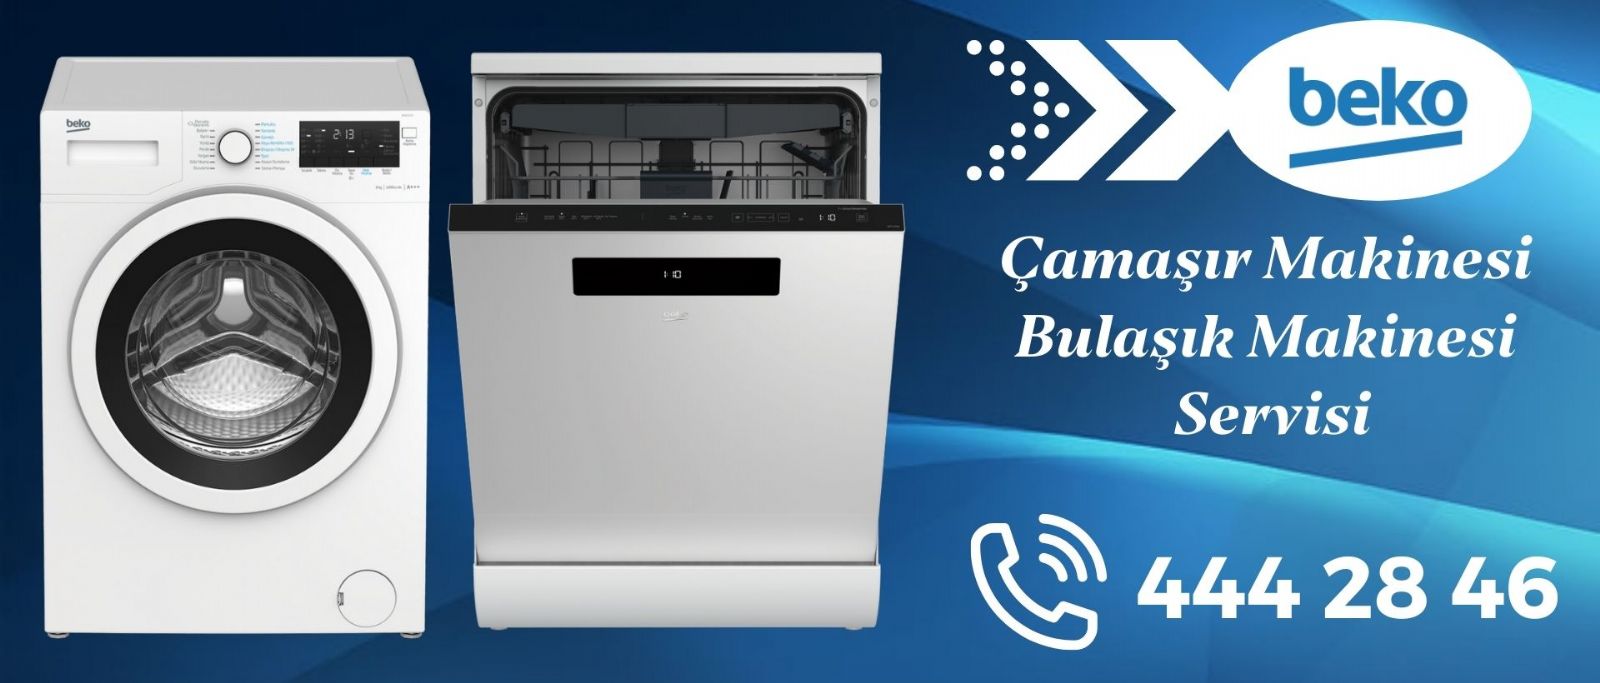 İzmir Beko Çamaşır-Bulaşık Makinesi Servisi